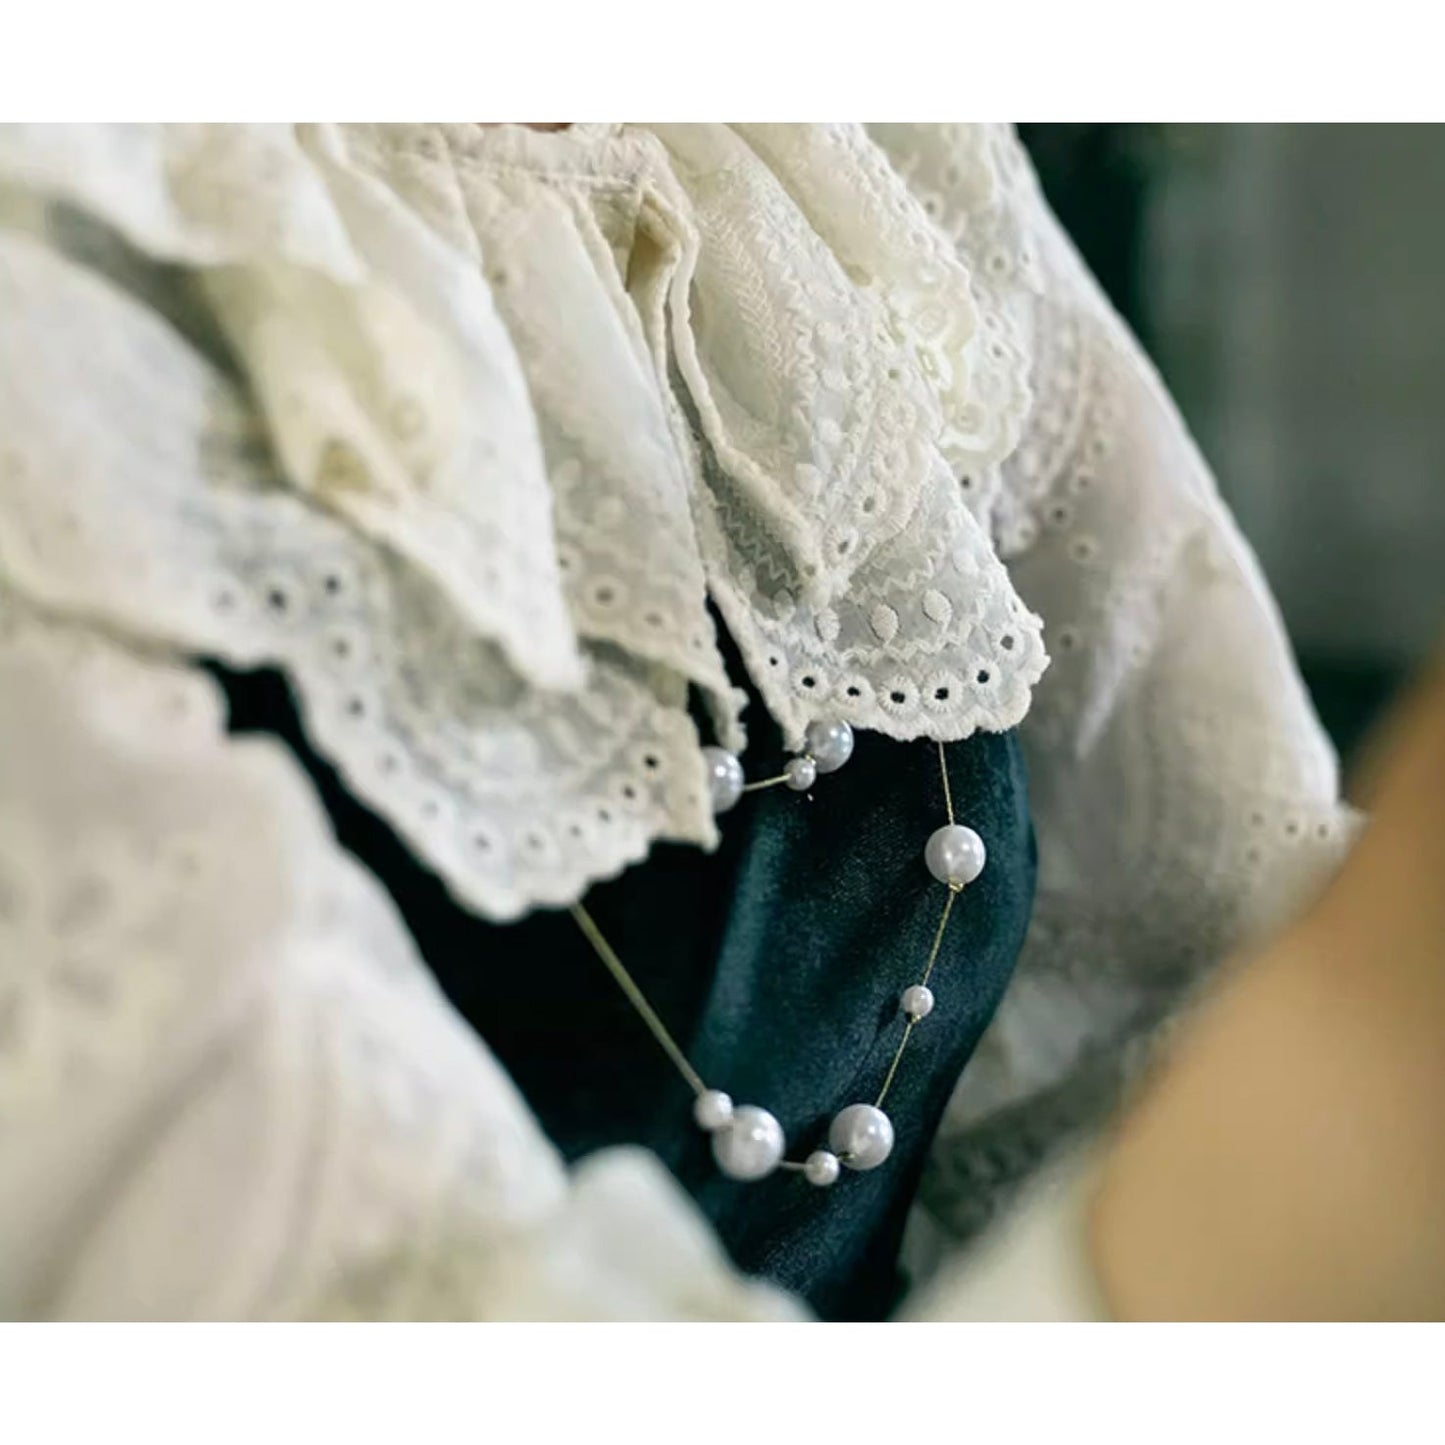 漆黒の舞踏会のベルベットジャンパースカート